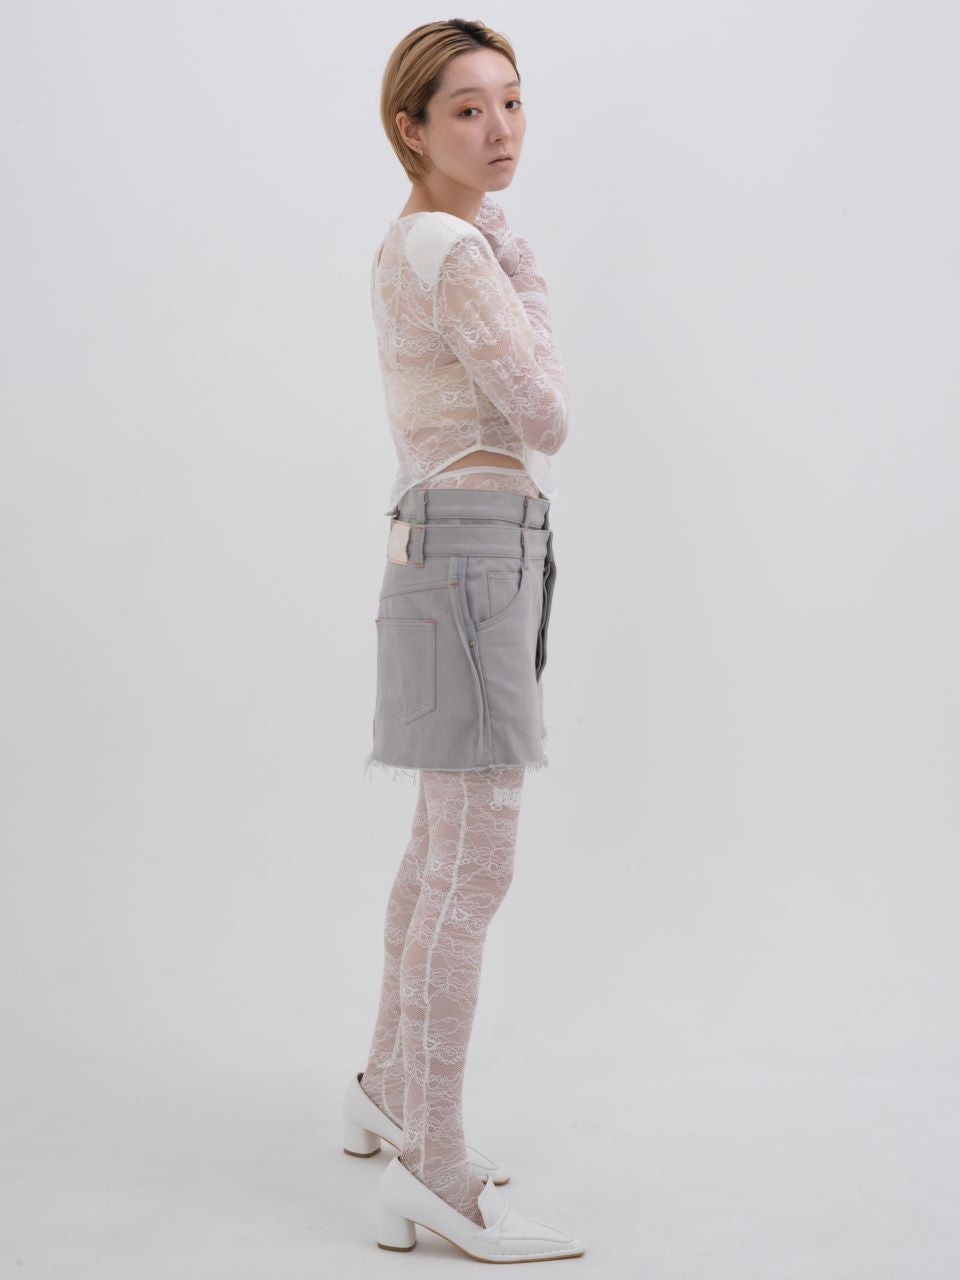 neith./Denim Skirt With Legcover デニムスカートレッグカバー